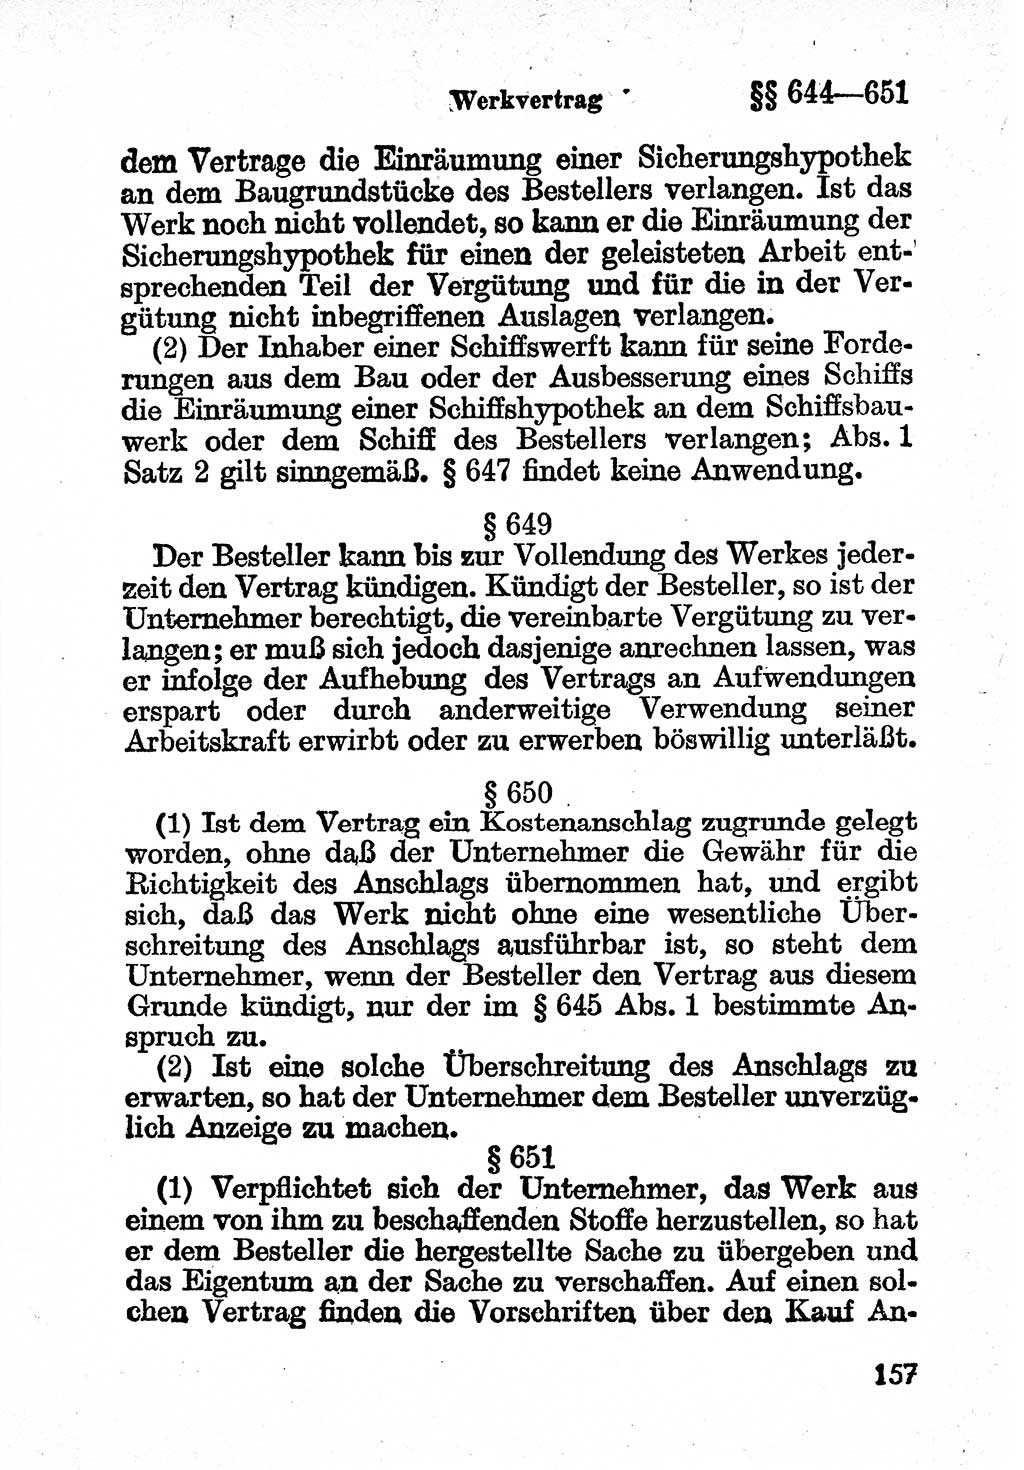 Bürgerliches Gesetzbuch (BGB) nebst wichtigen Nebengesetzen [Deutsche Demokratische Republik (DDR)] 1956, Seite 157 (BGB Nebenges. DDR 1956, S. 157)